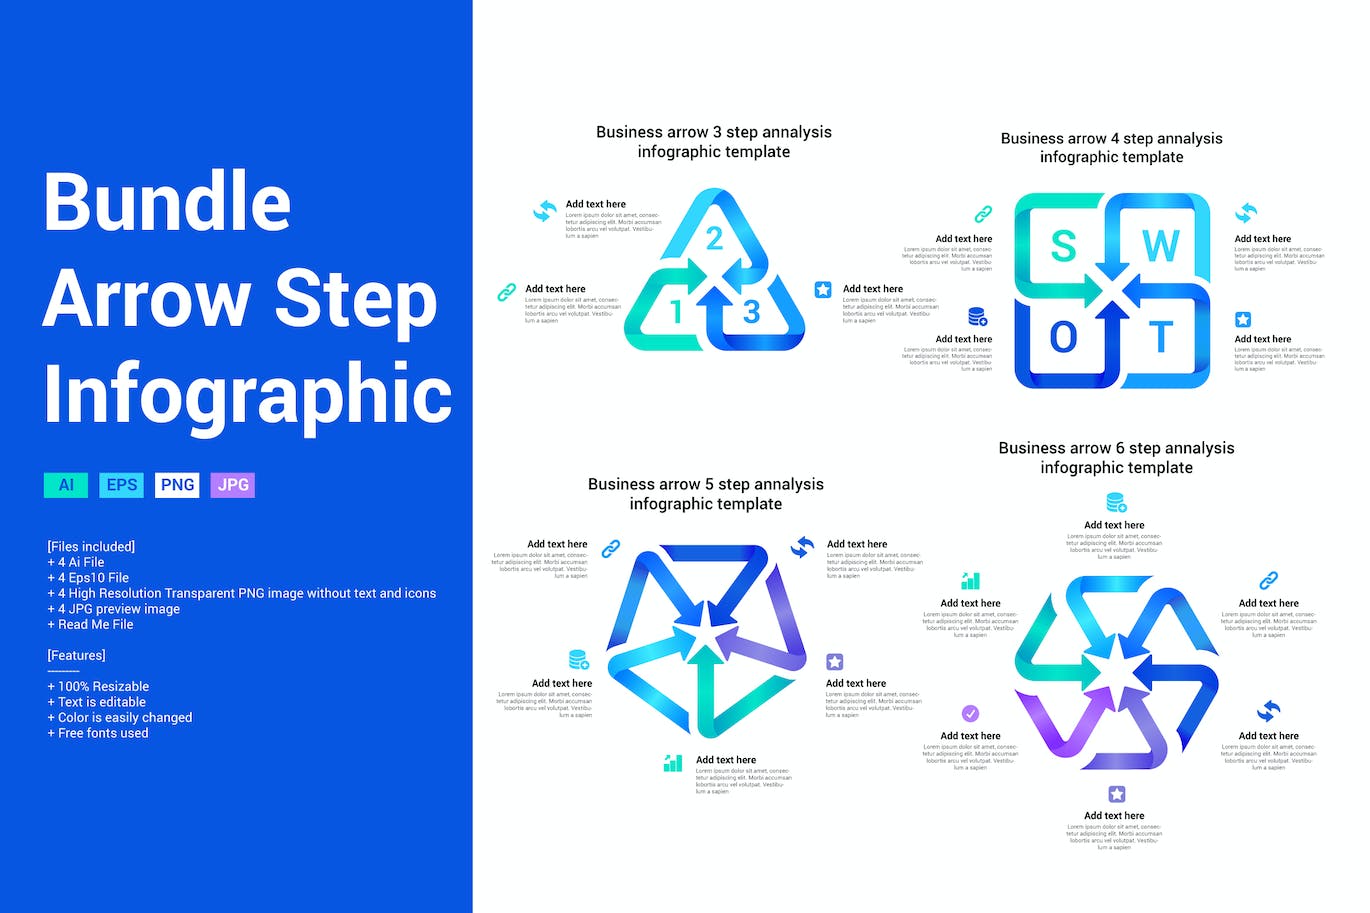 箭头步骤信息图表设计模板 Bundle Arrow Step Infographic 幻灯图表 第1张